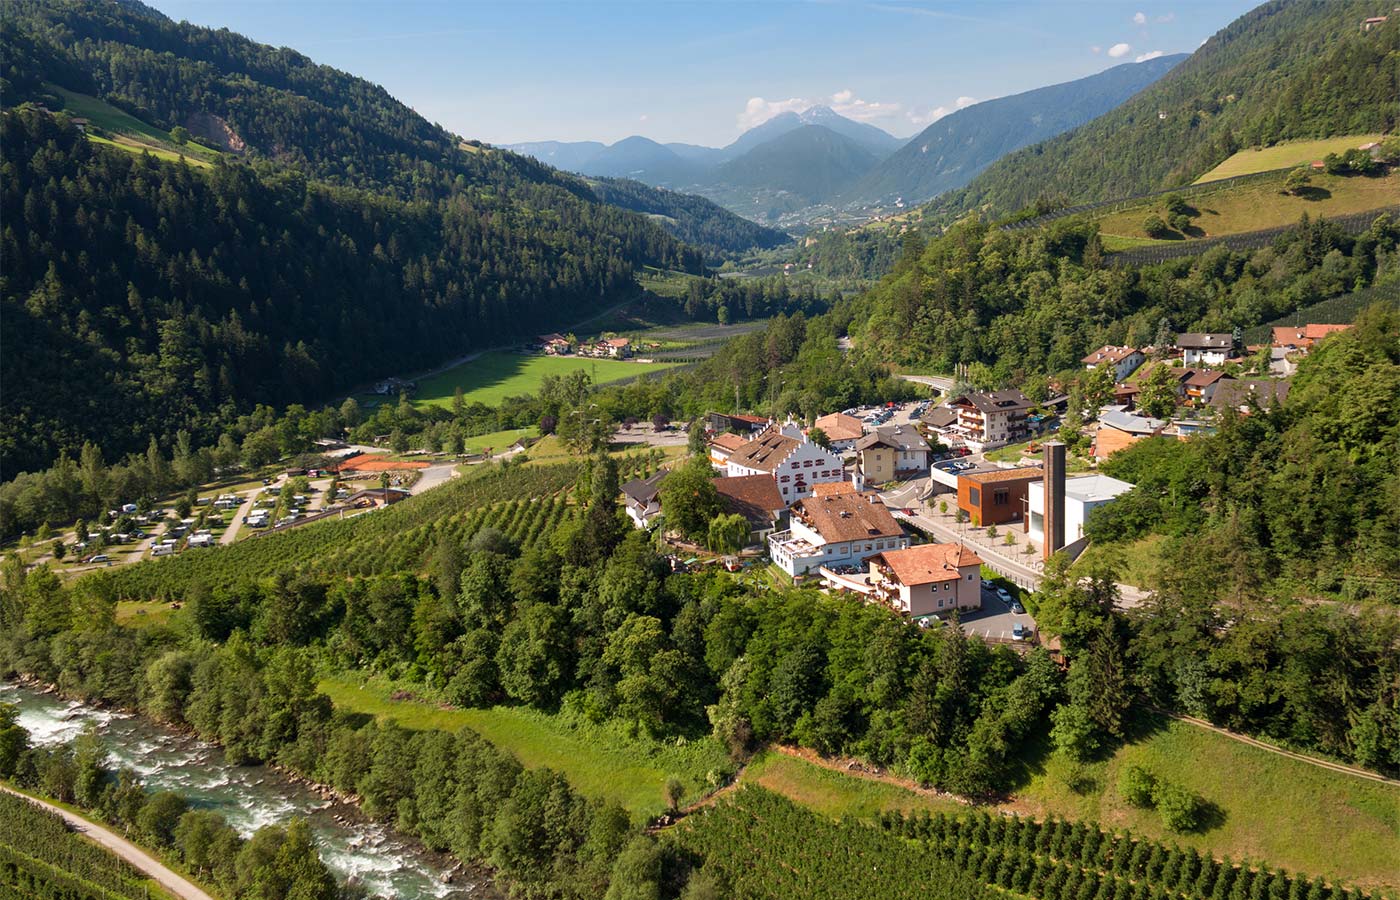 L'Hotel Alpenhof si trova a Saltusio, nella Val Passiria meridionale